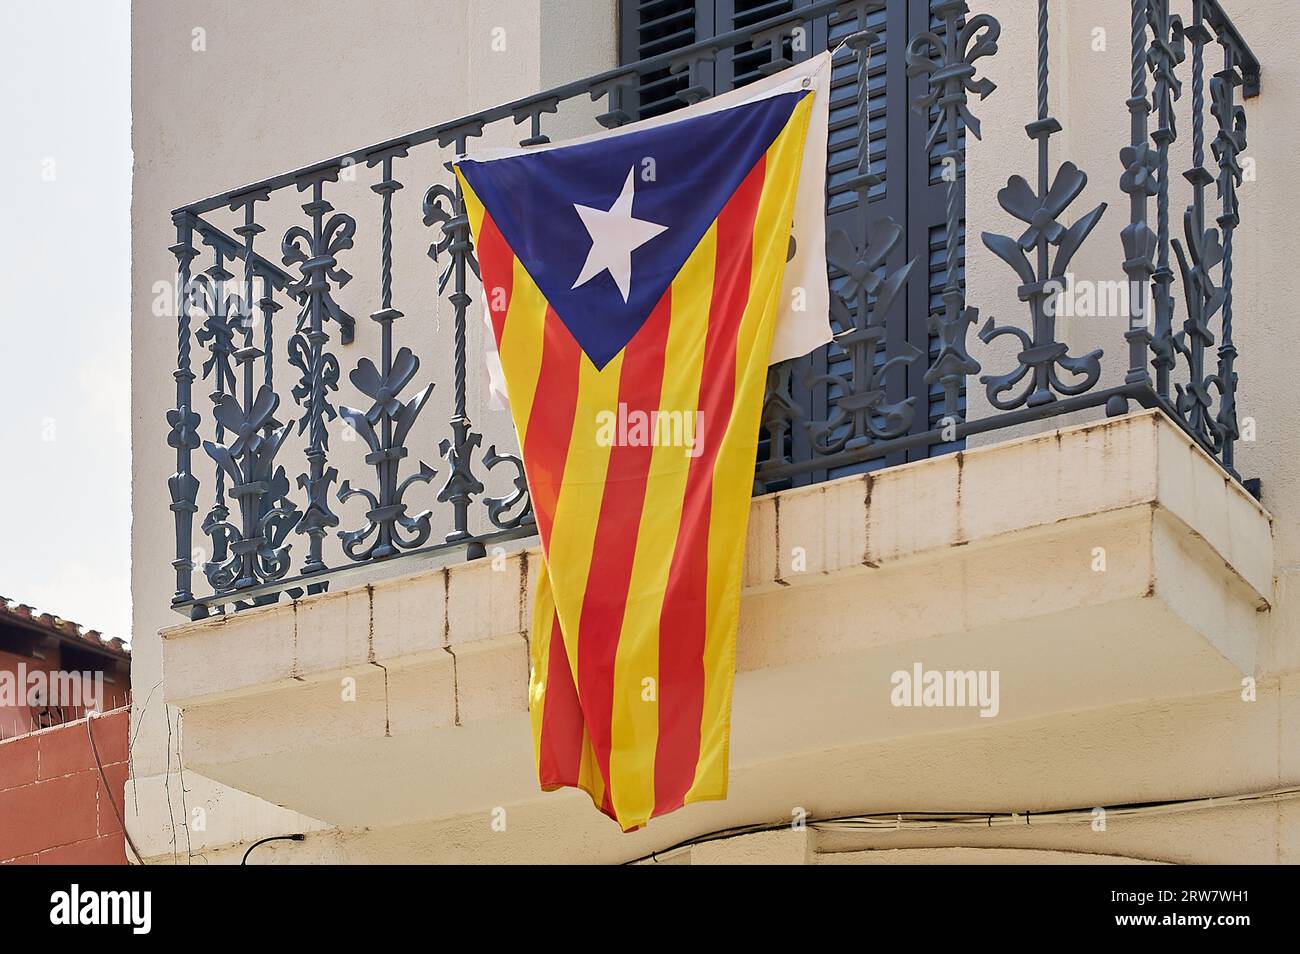 Bandiera dell'indipendenza catalana appesa da un balcone che chiede l'indipendenza della Catalogna l'11 settembre, giorno della Catalogna Foto Stock